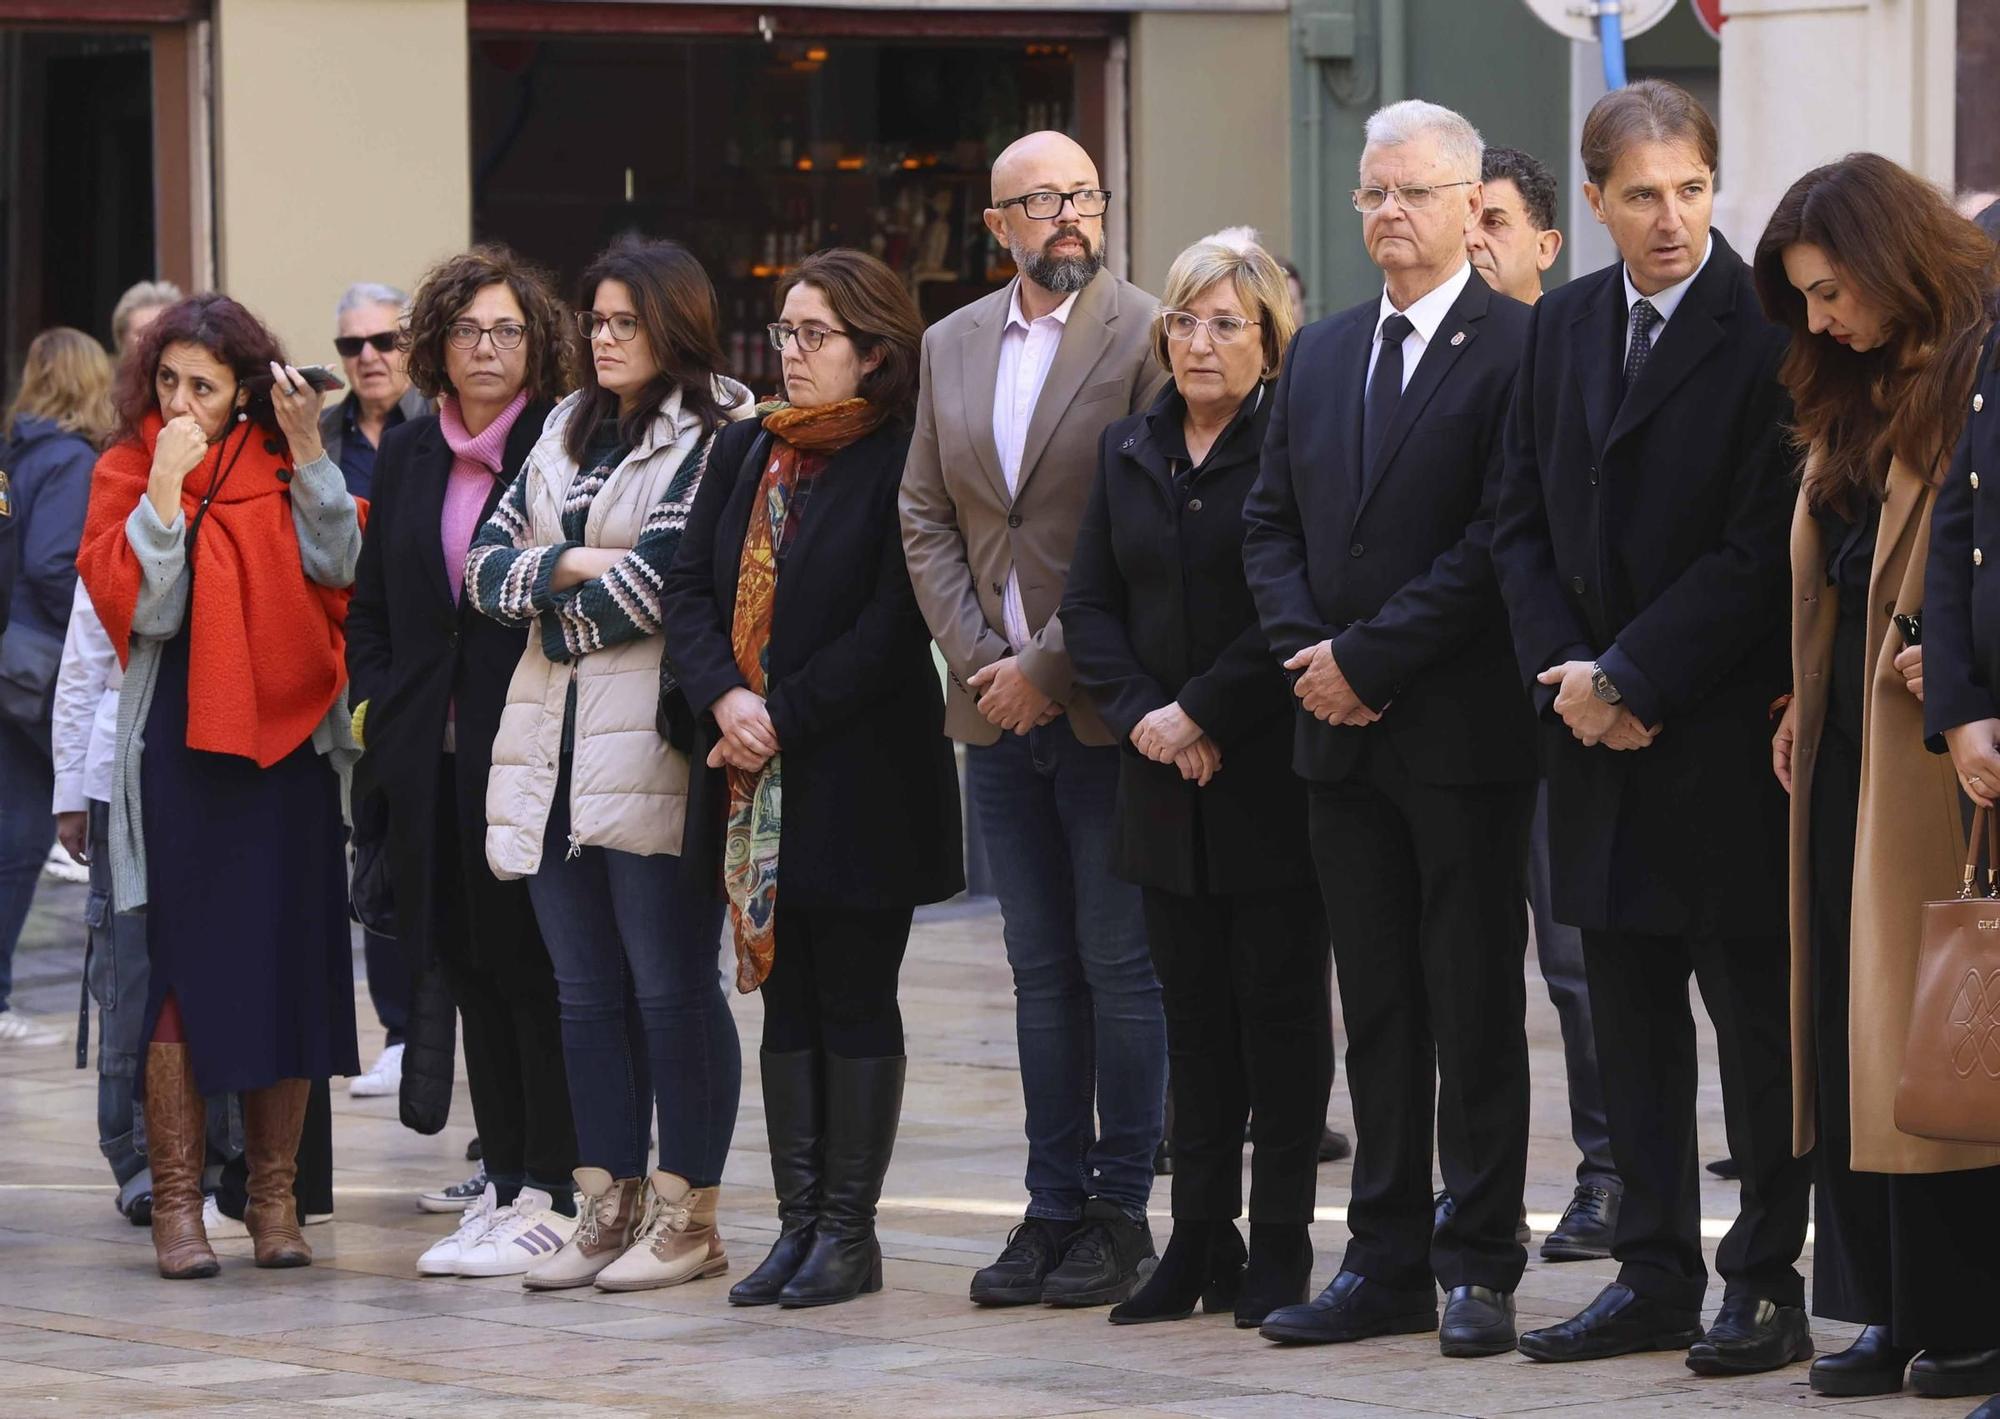 La ciudad de Alicante despide a su exalcalde Miguel Valor